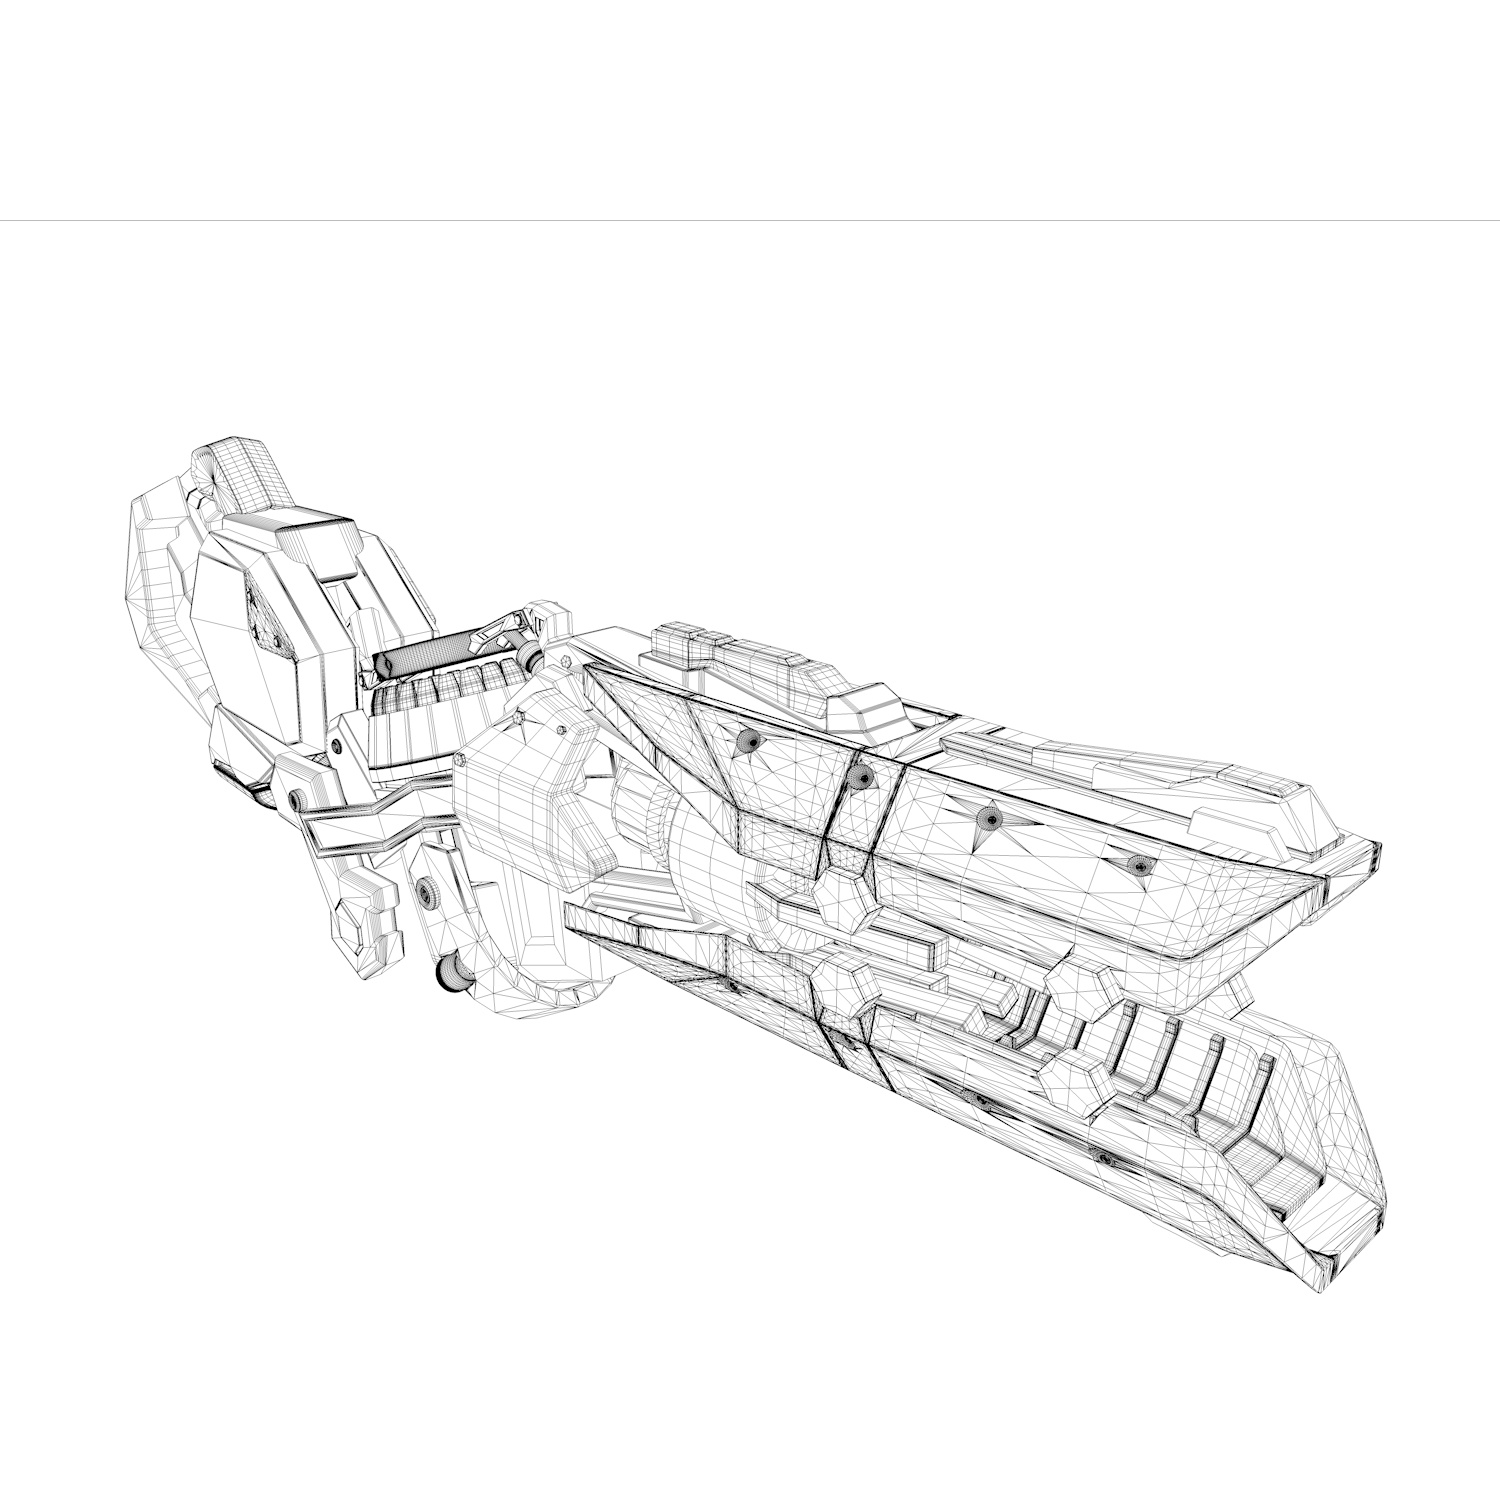 Zarya våpen 3d modell